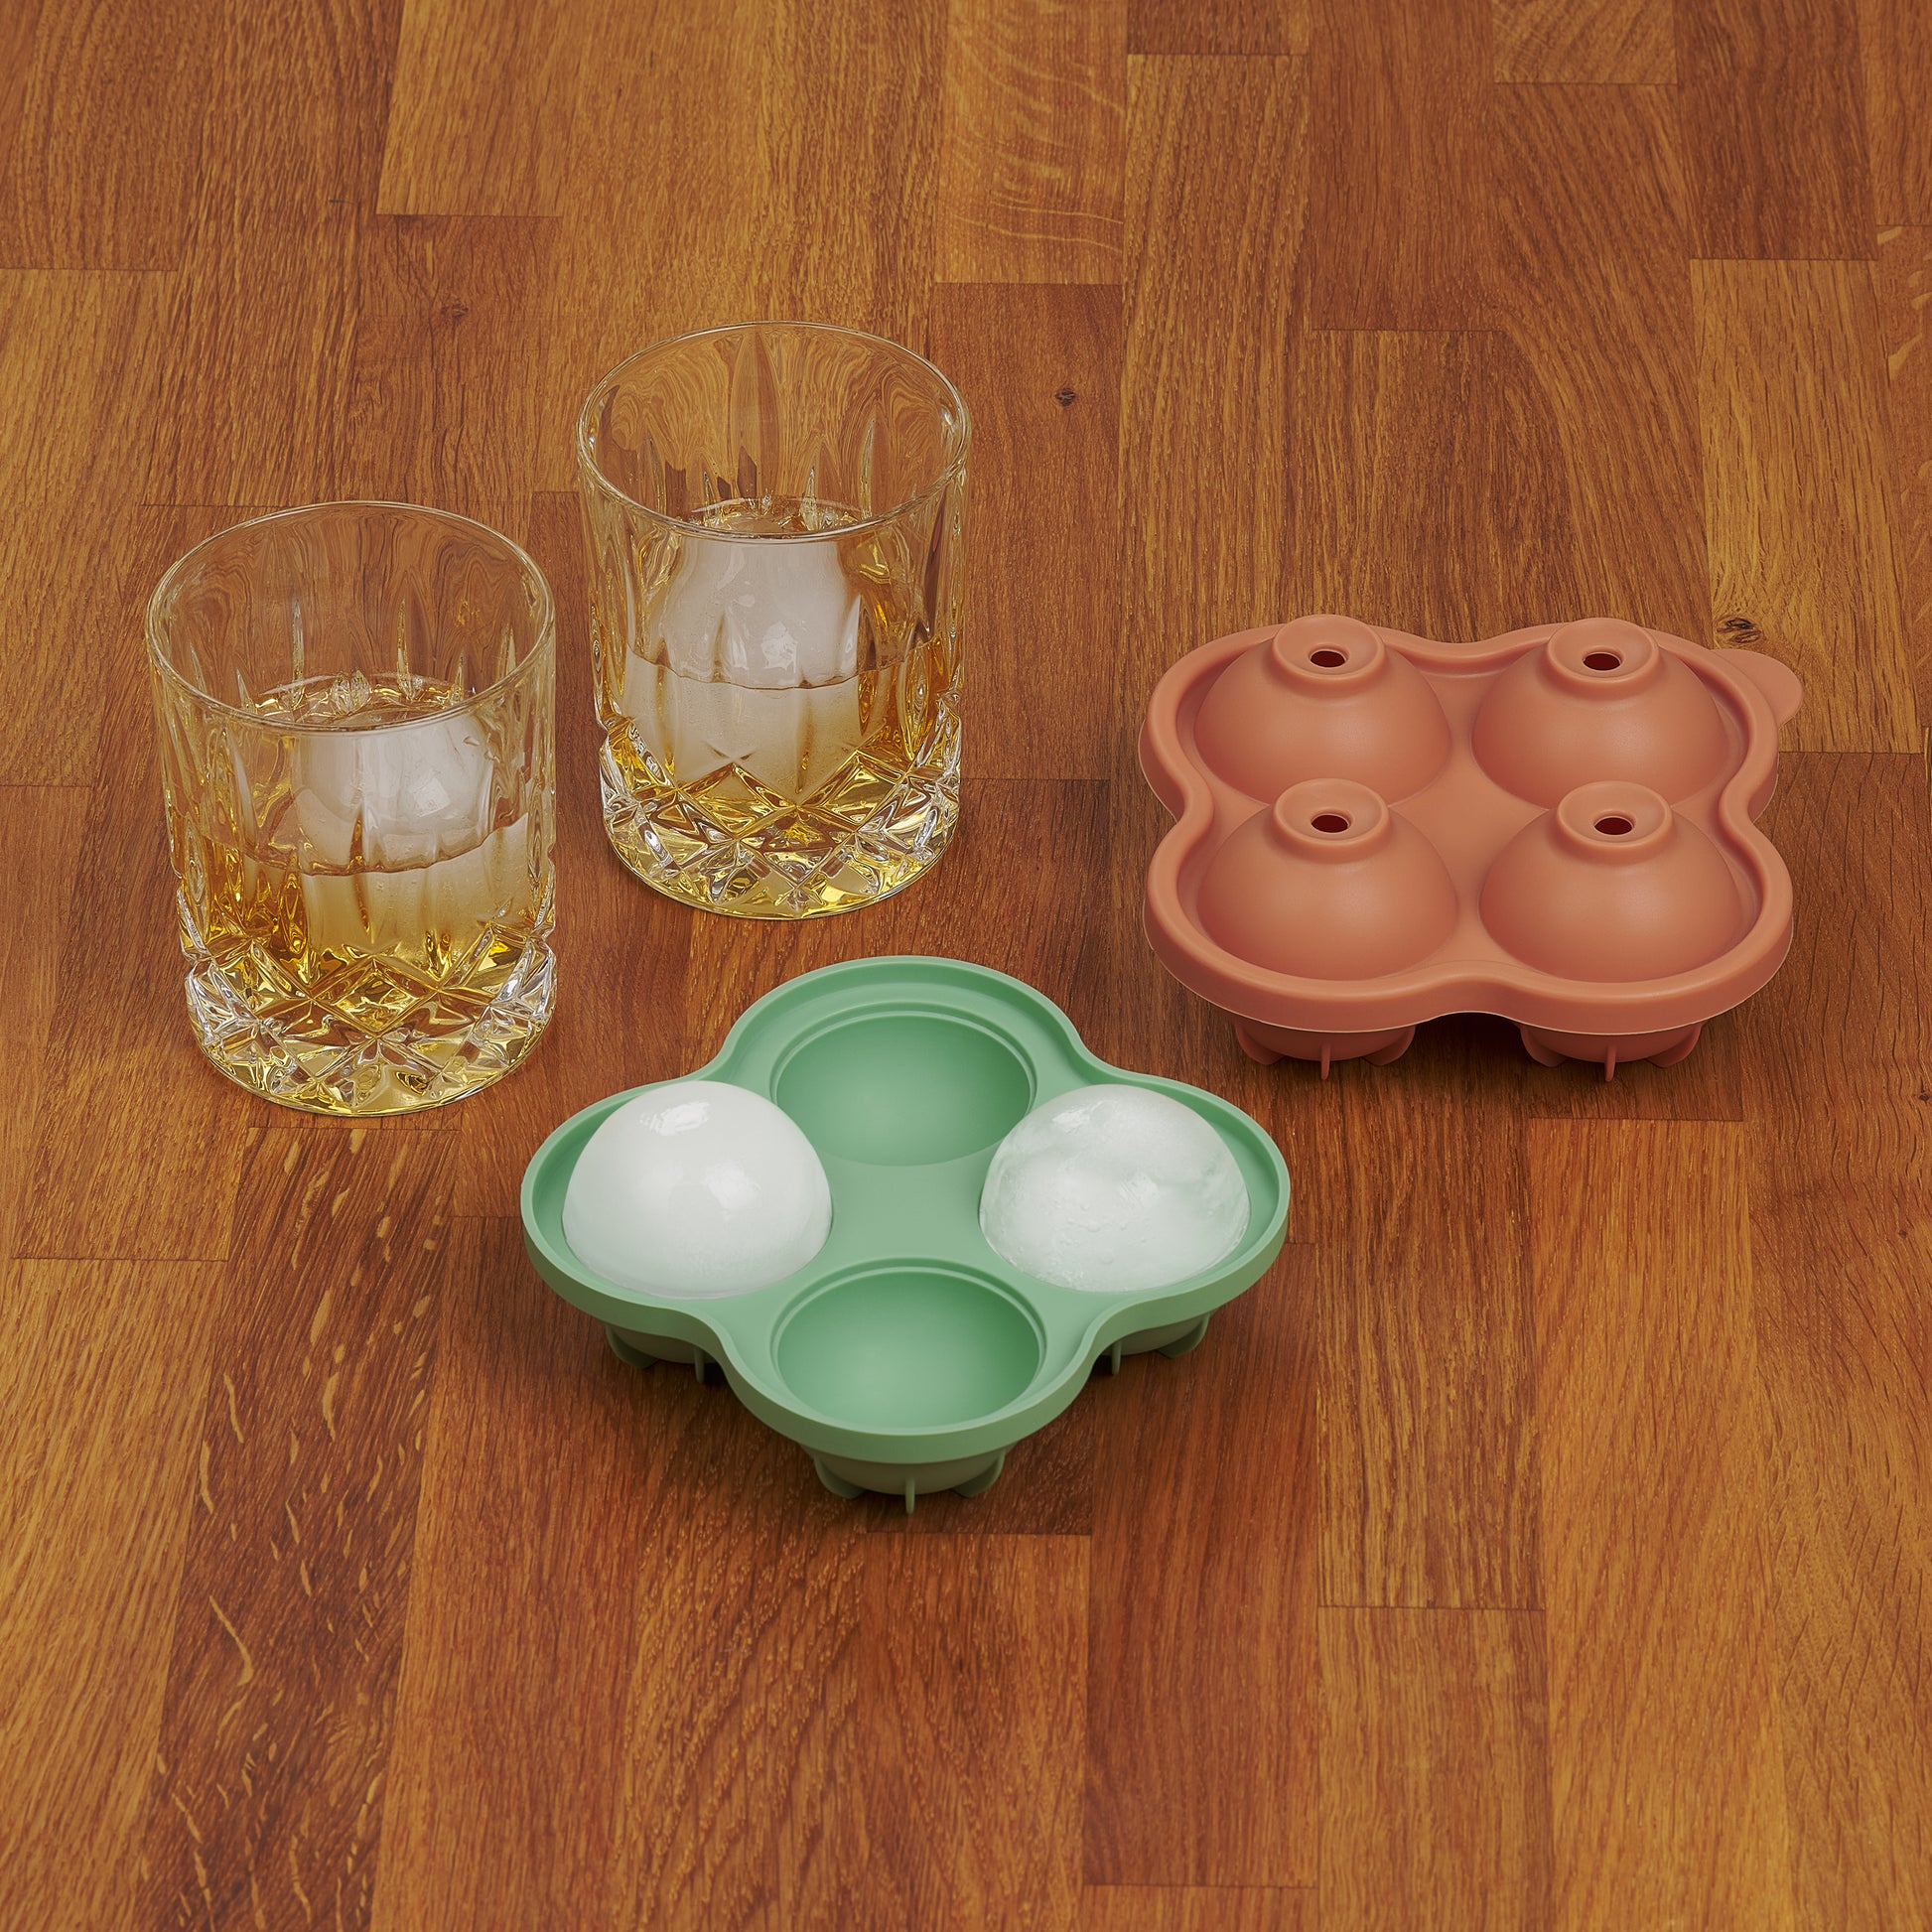 Zwei Whiskygläser mit Eiskugeln neben einer leeren und einer vollen gruenen Eiskugelform auf Holzoberfläche.